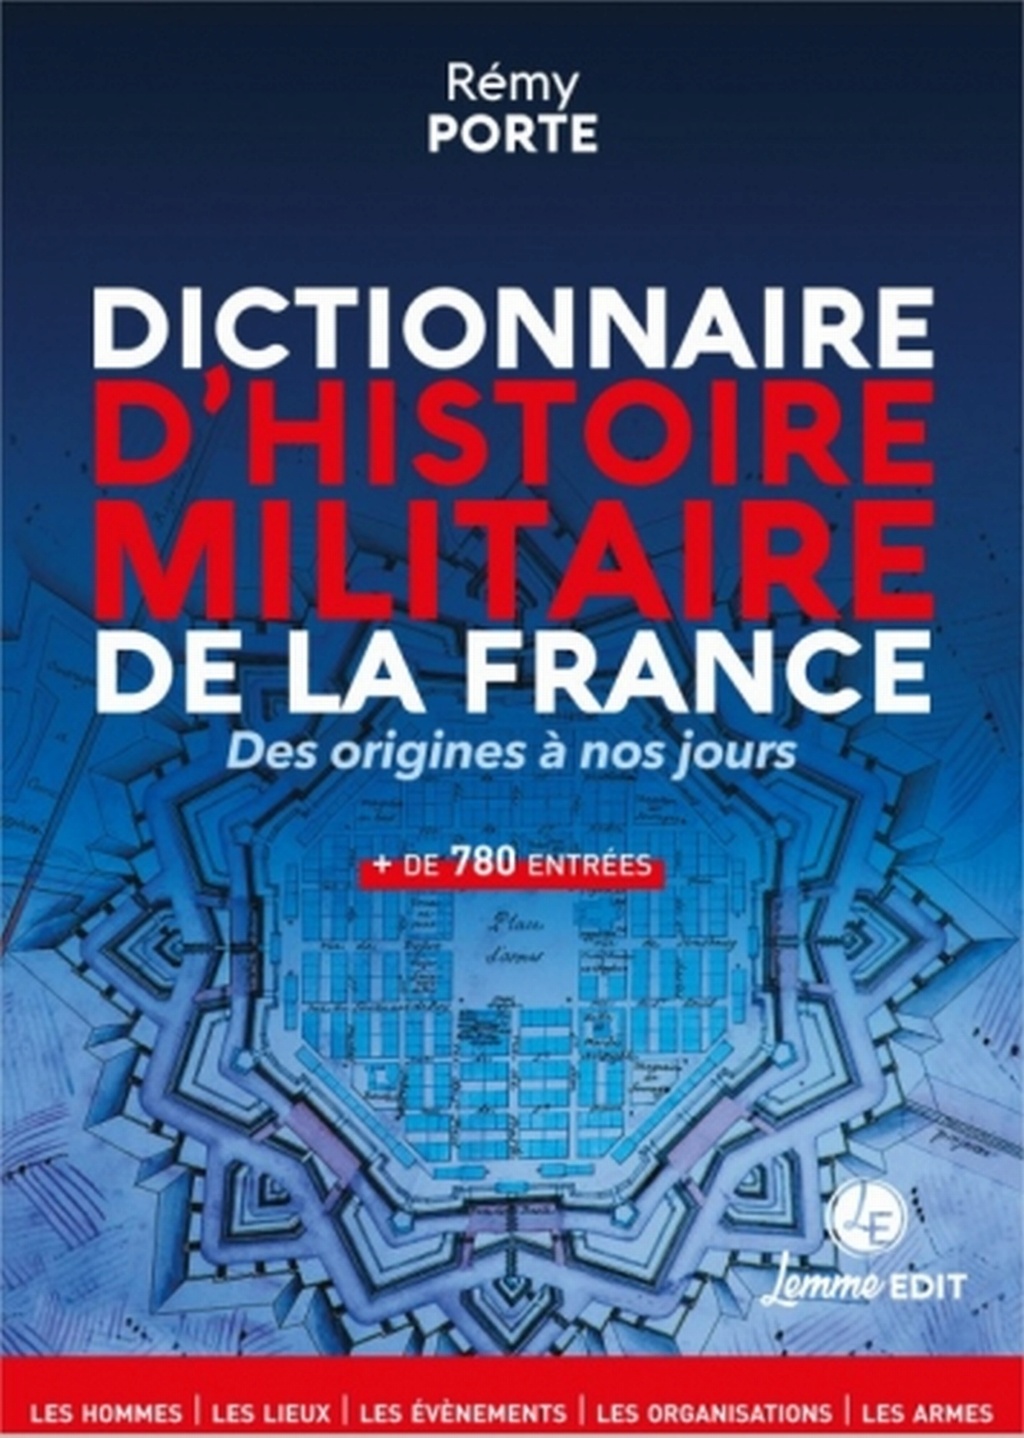 Le dictionnaire d'histoire militaire de la France en librairie le 17 mai Remy010